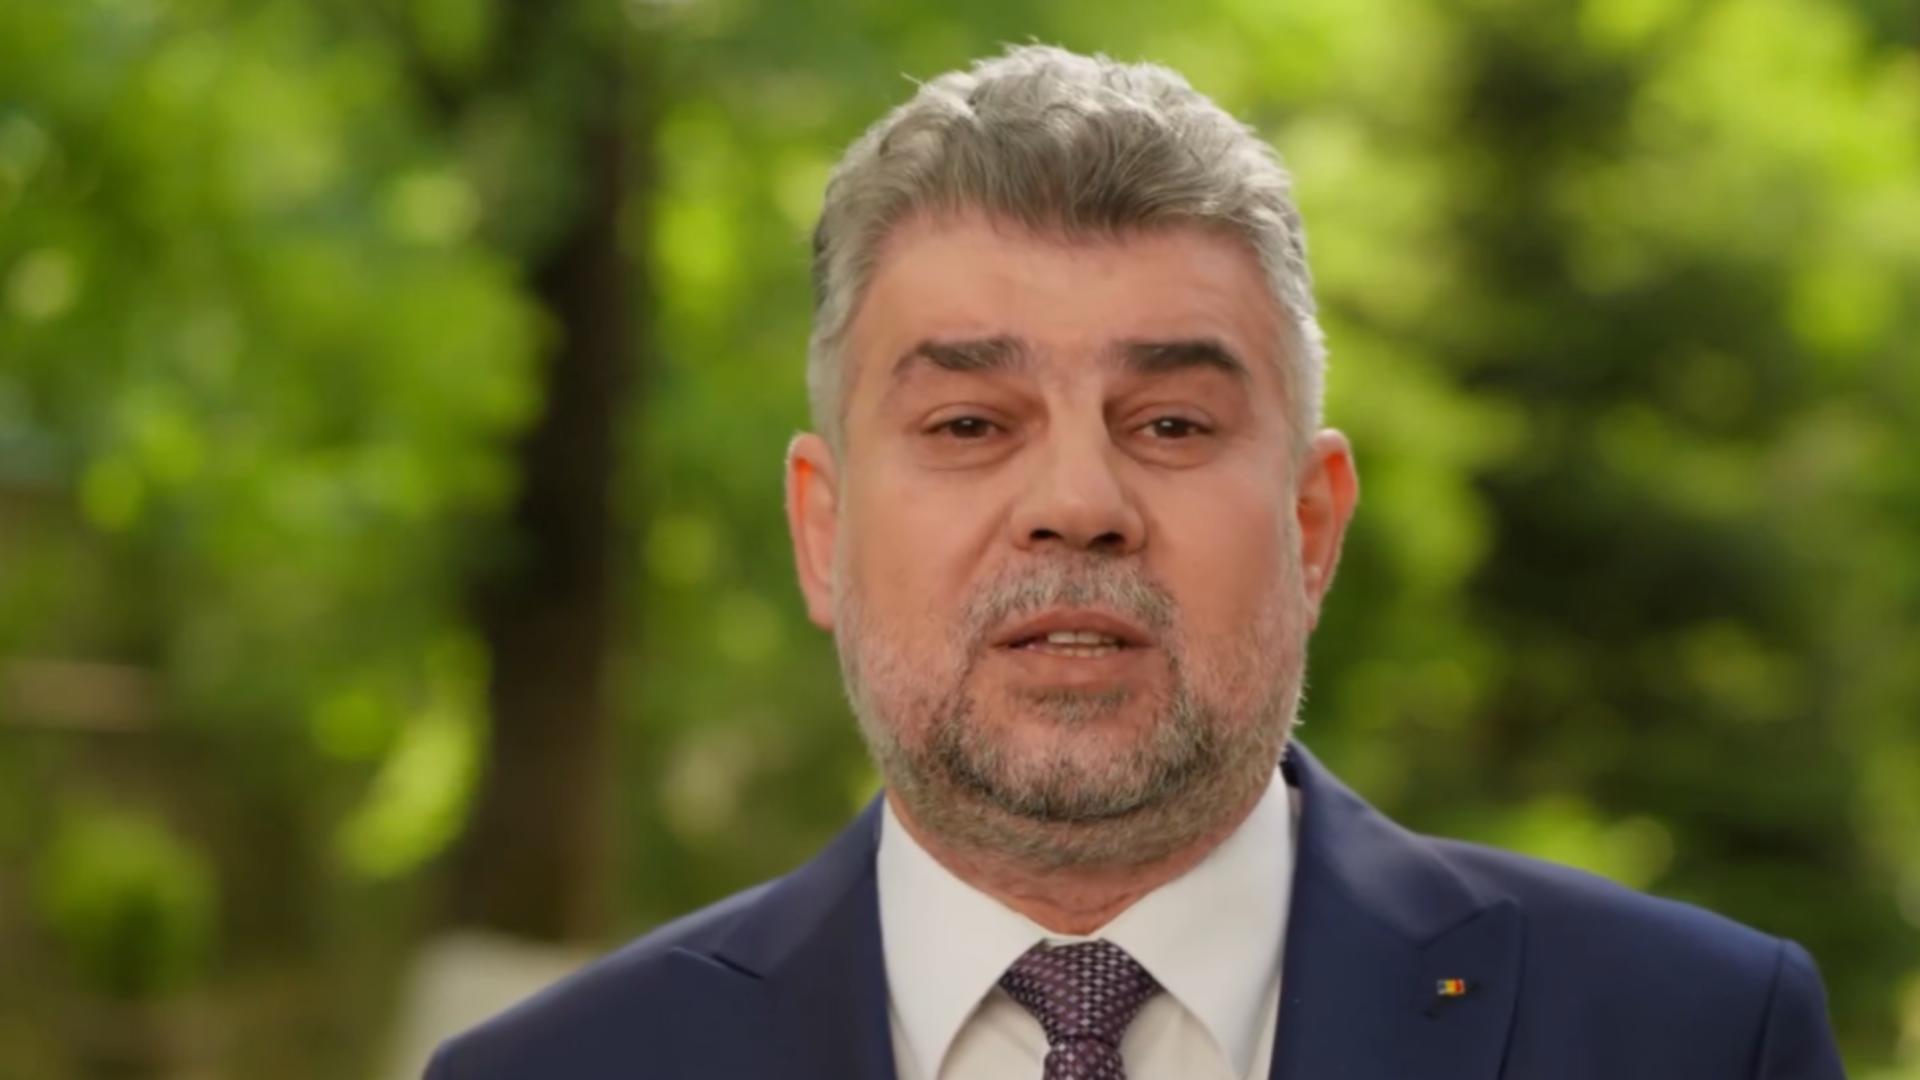 Șeful Guvernului și al PSD a transmis un mesaj video